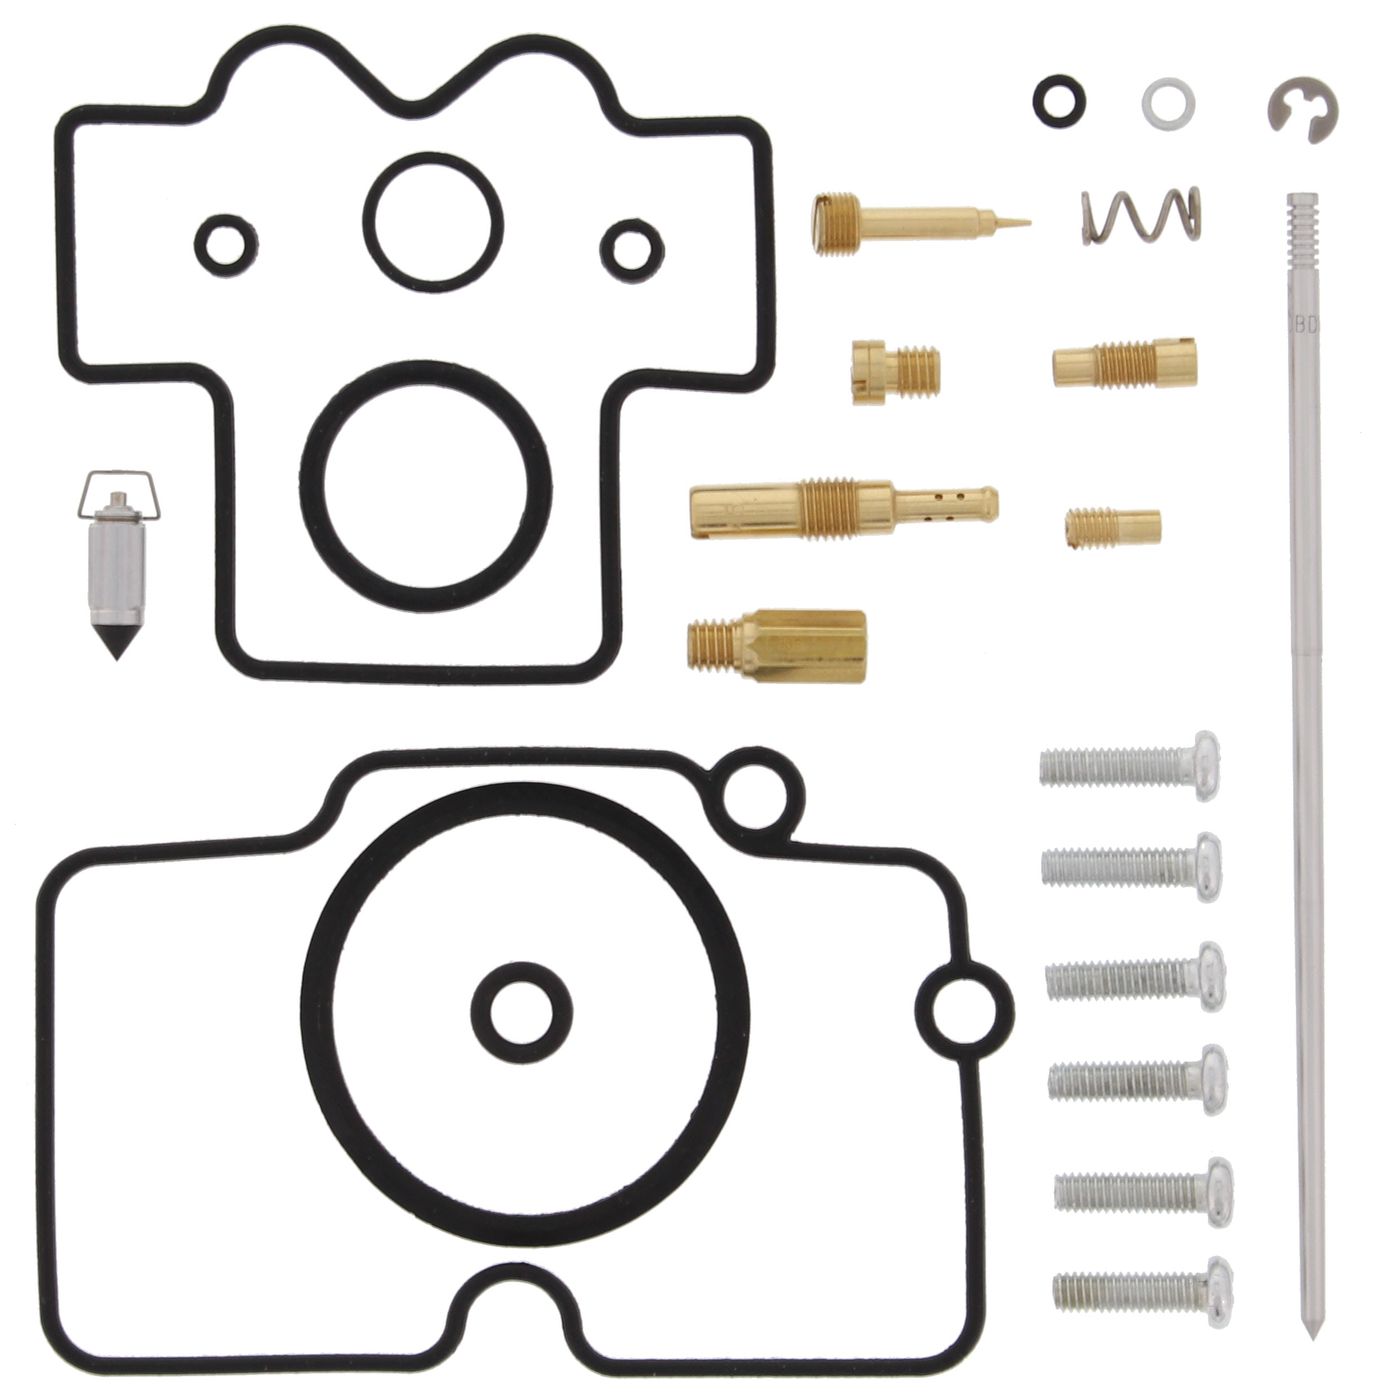 Wrp Carb Repair Kits - WRP261268 image